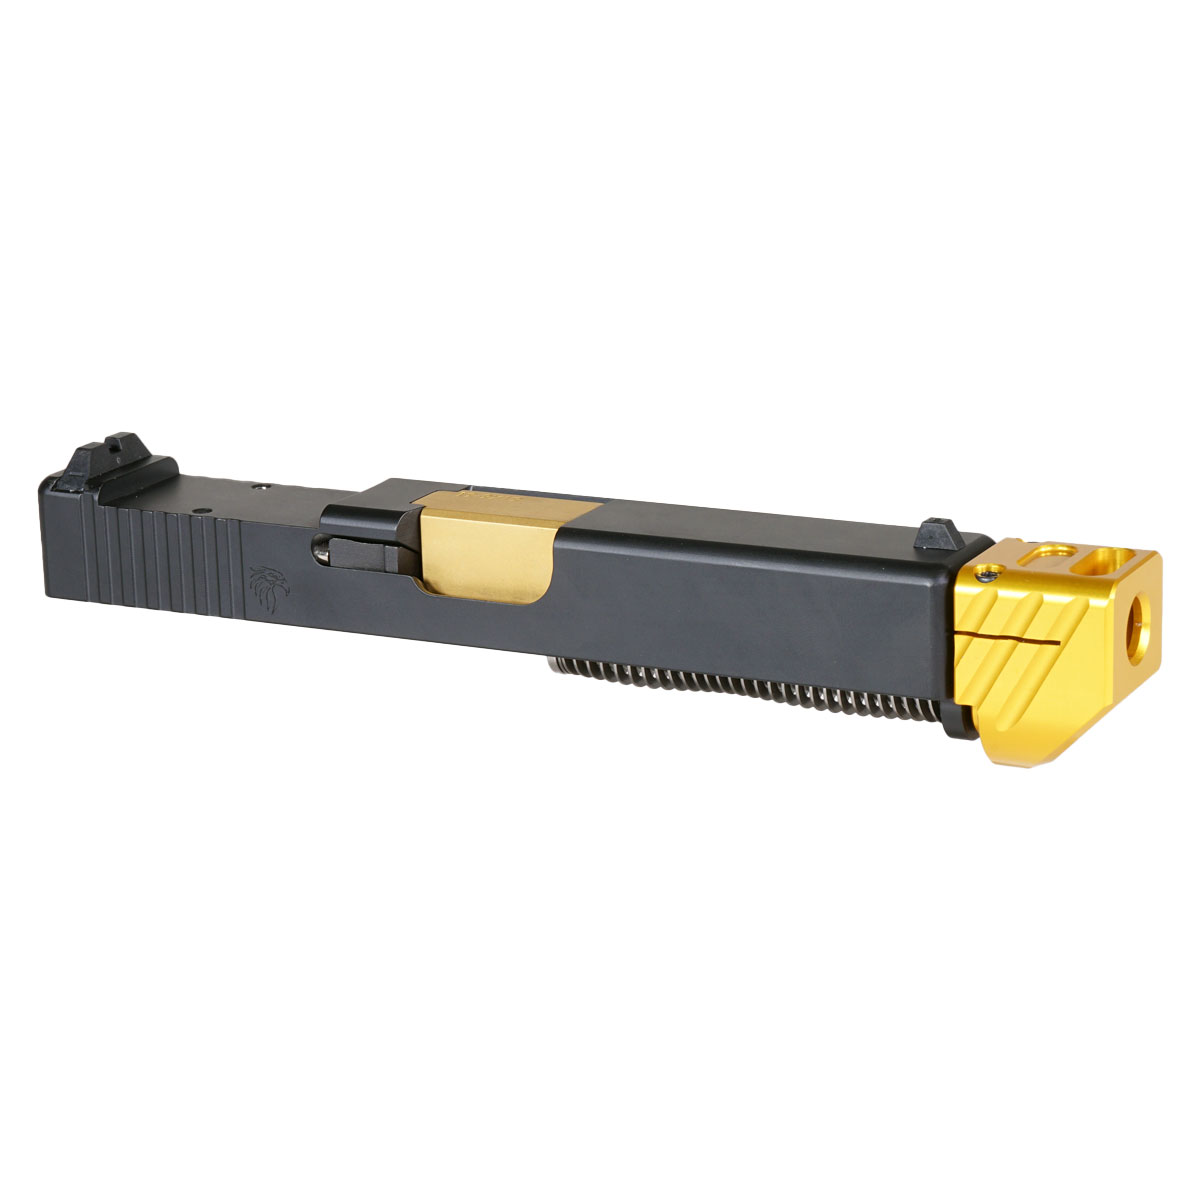 DTT 'Skyflash V2 w/ Gold Compensator' 9mm Complete Slide Kit - Glock 19 Gen 1-3 Compatible